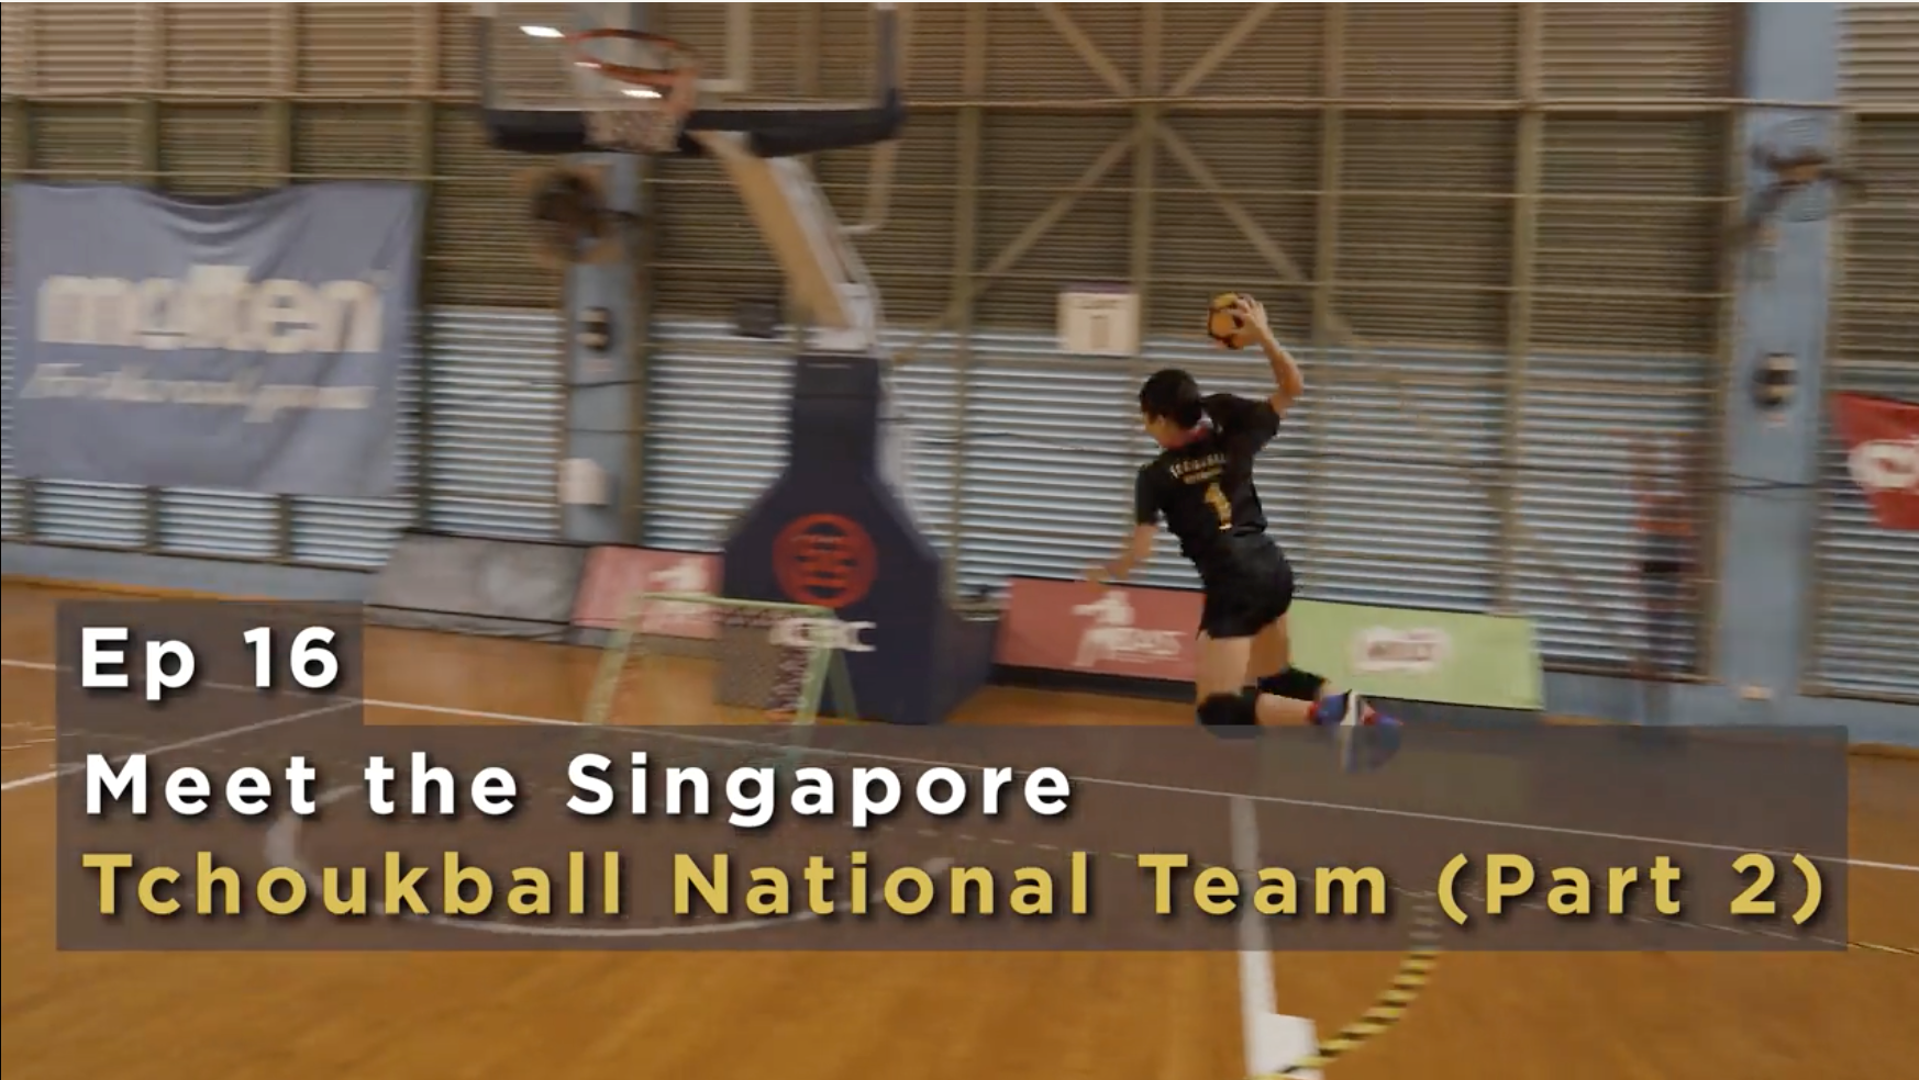 Meet the Singapore Tchoukball National Team (Part 2) (Episode 16)